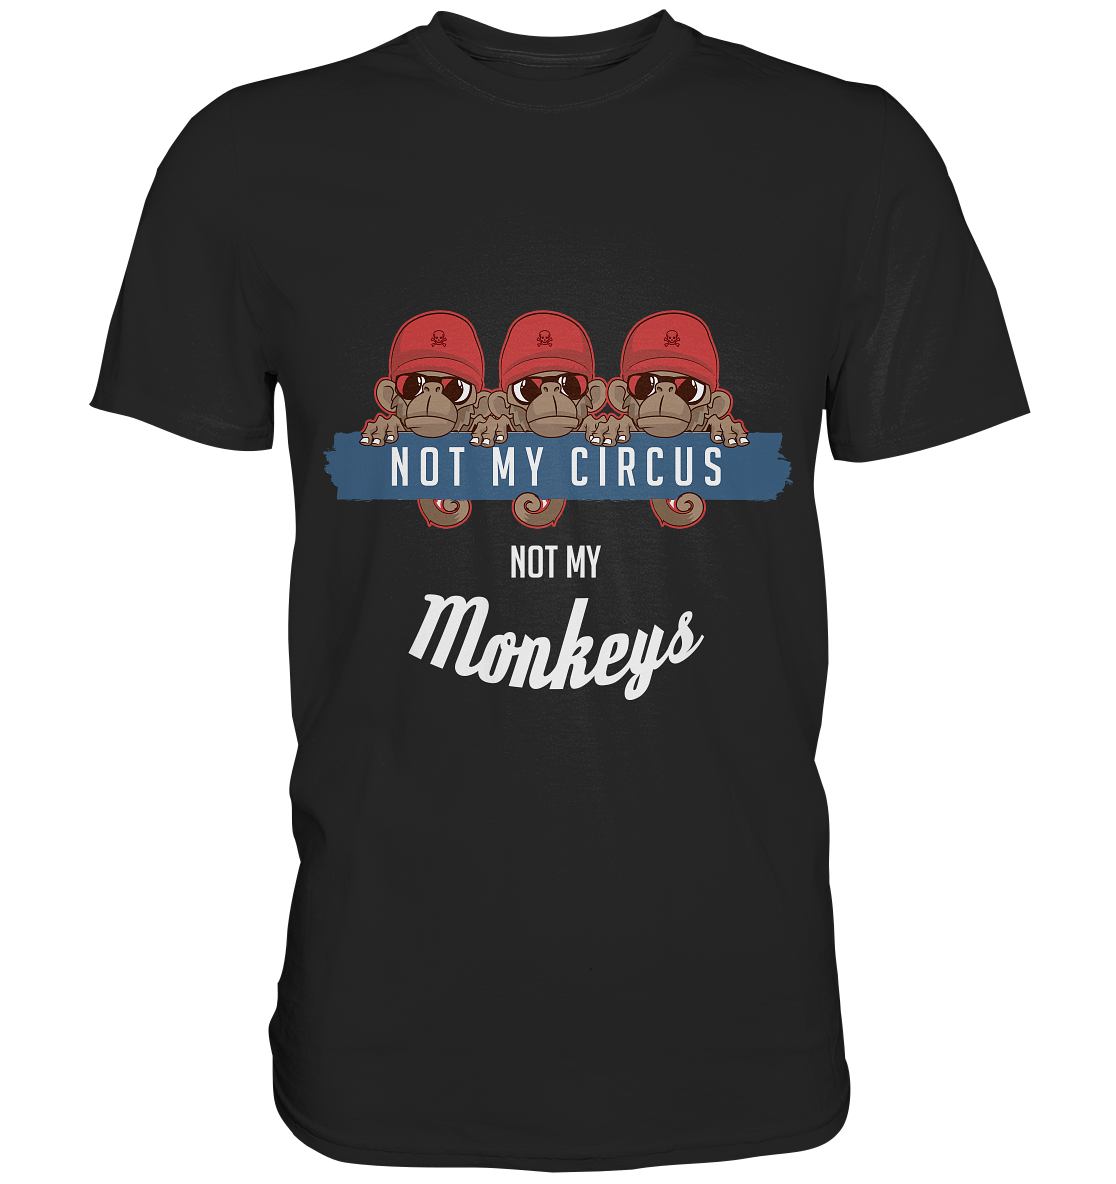 Not my circus. Not my monkeys - Unisex-Premium Shirt